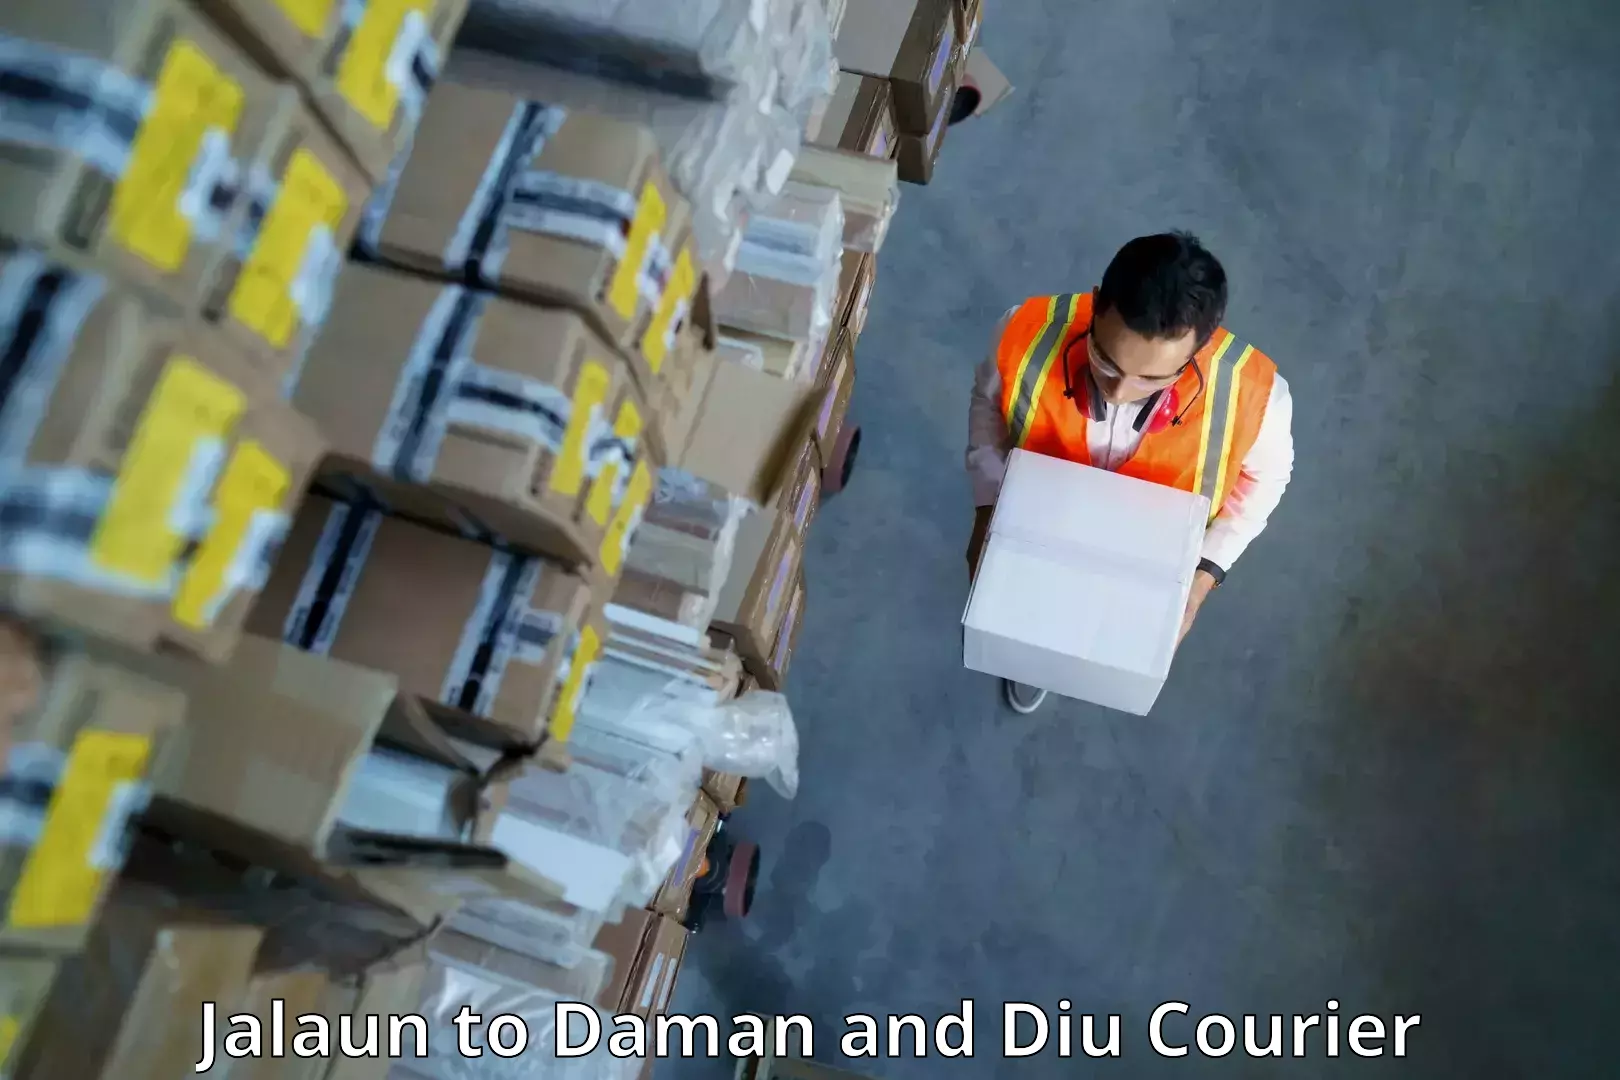 Efficient shipping operations Jalaun to Diu